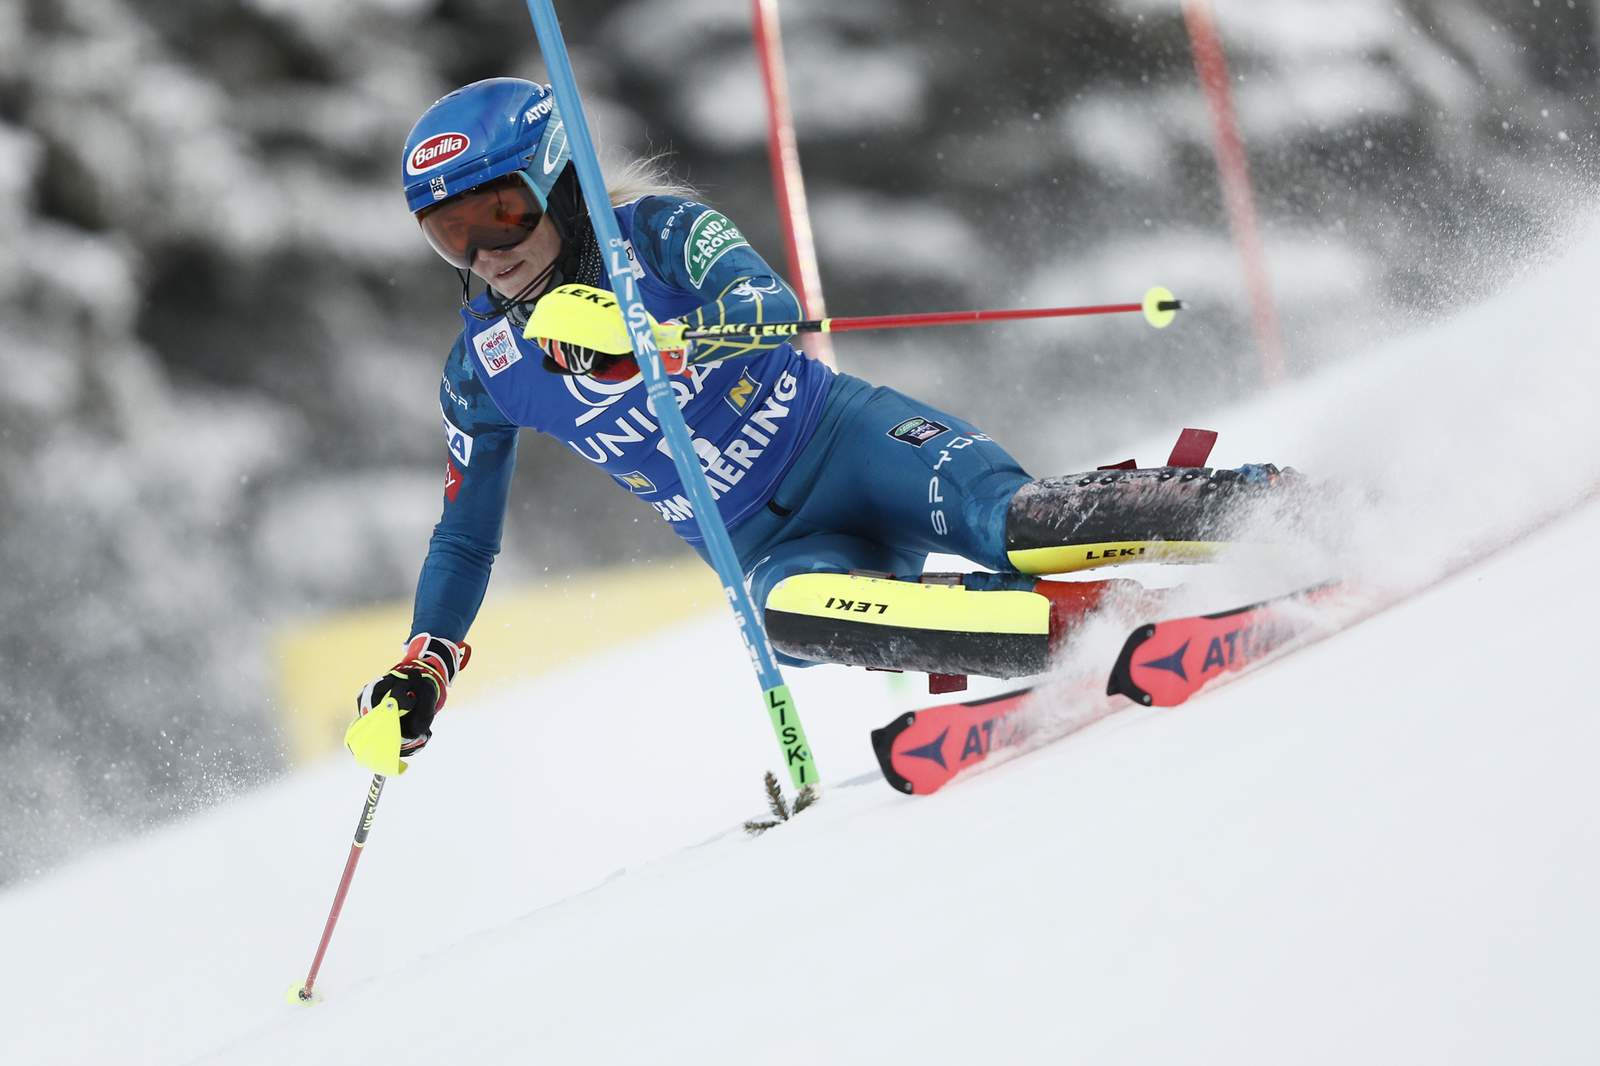 Shiffrin leads Gisin in slalom after 1st run, Vlhova in 6th